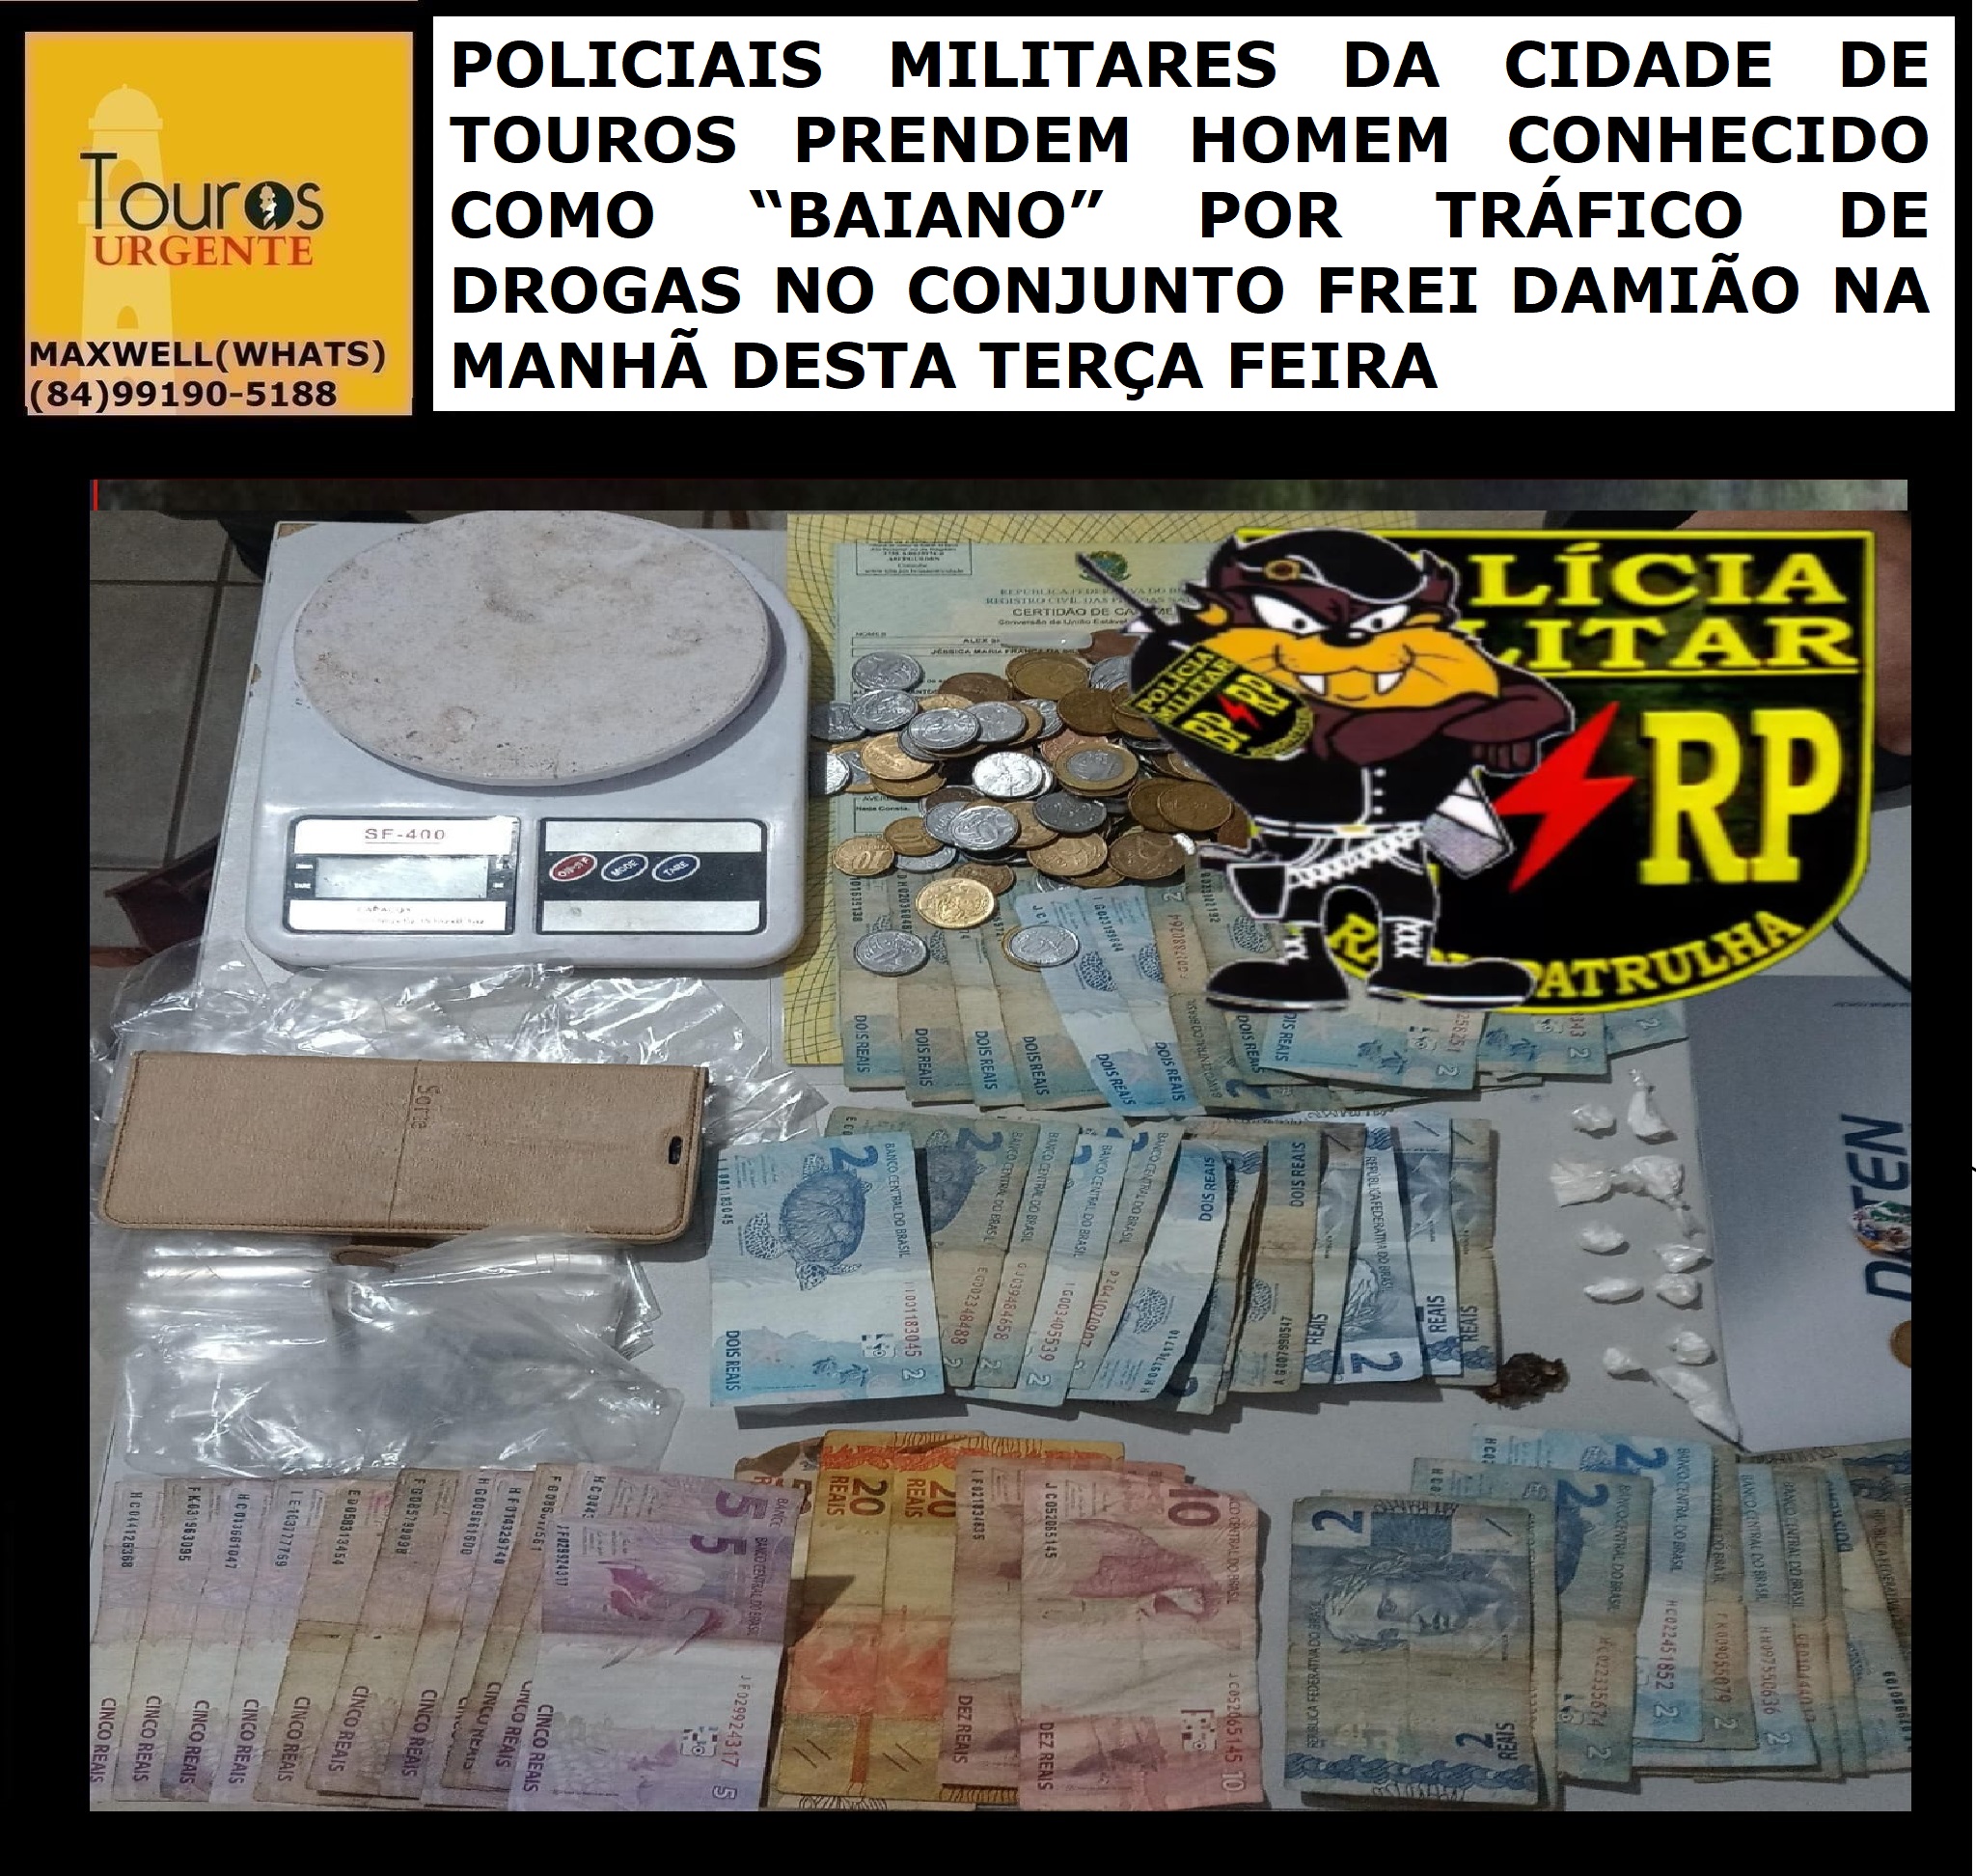 ​POLICIAIS MILITARES DA CIDADE DE TOUROS PRENDEM HOMEM CONHECIDO COMO